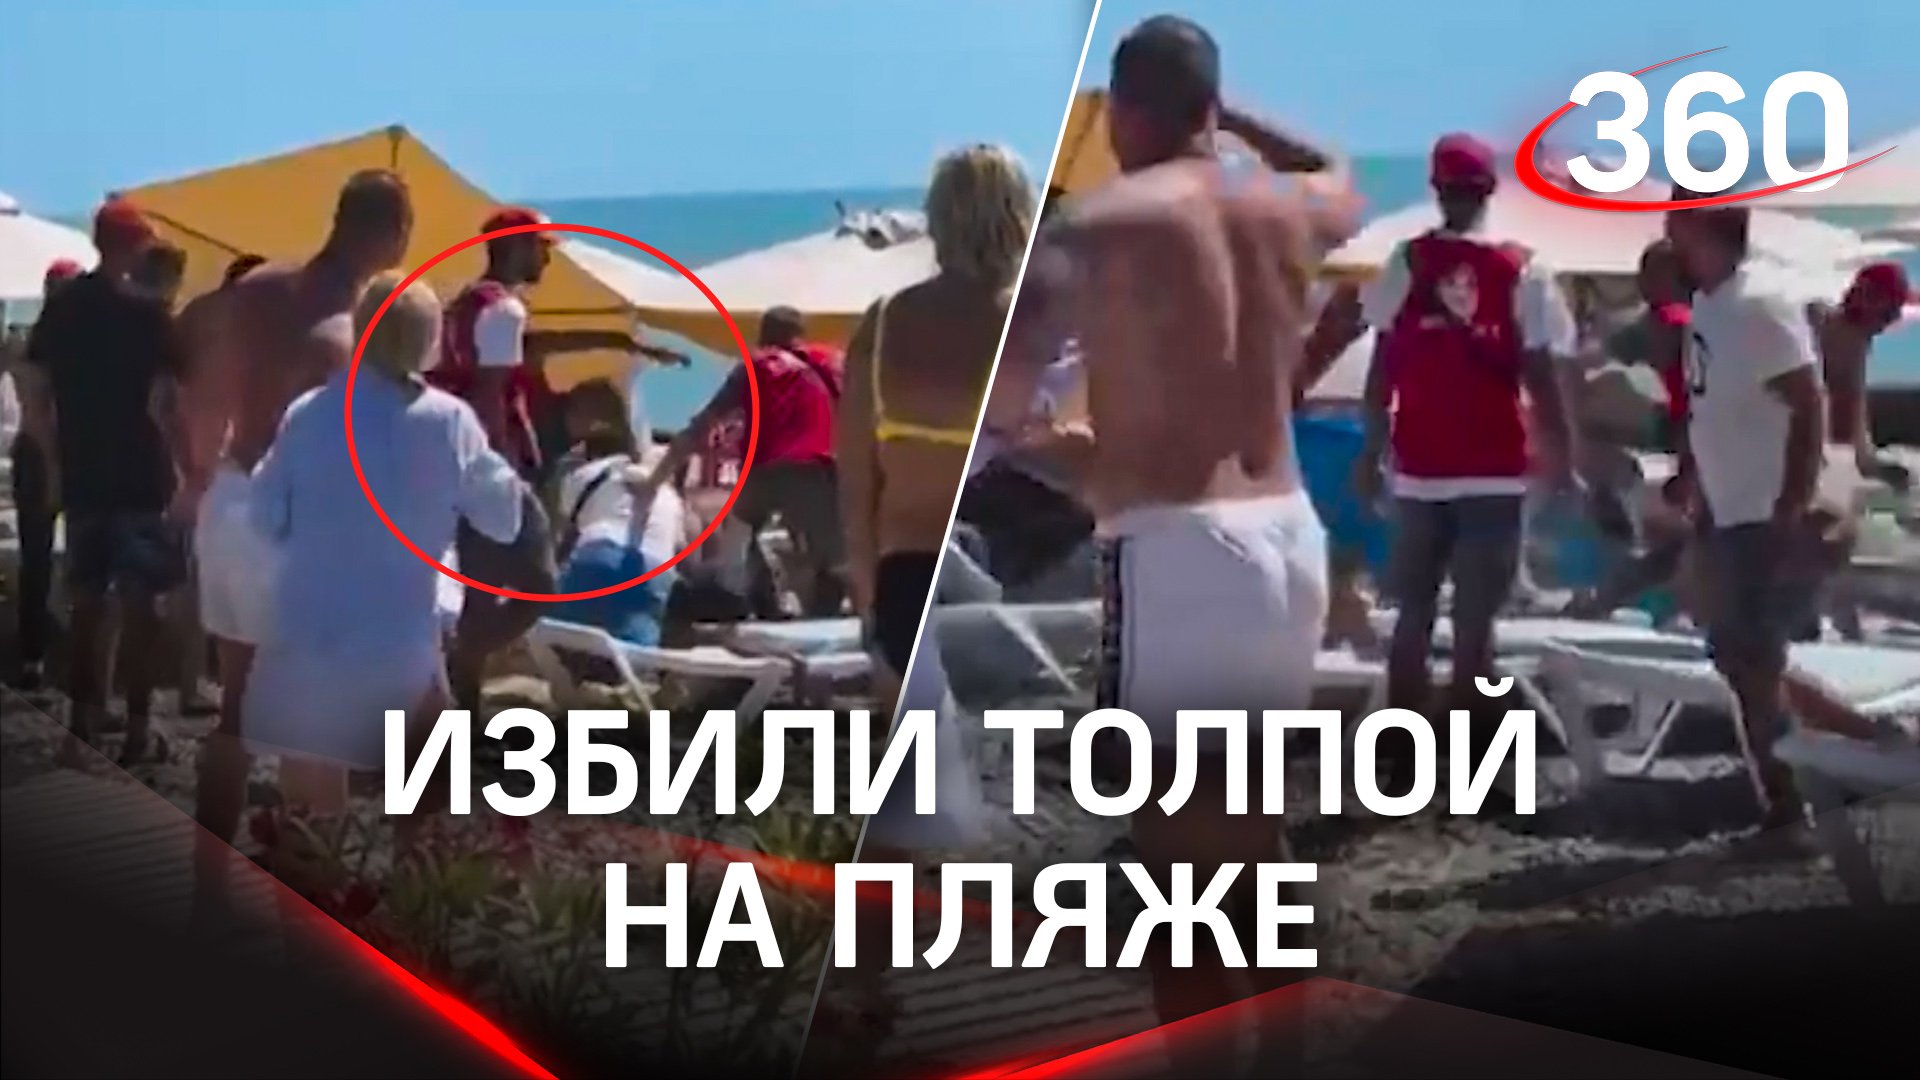 Сочи, пляж Фрегат: толпа с арматурой избивает отдыхающего. Видео и комментарии МВД